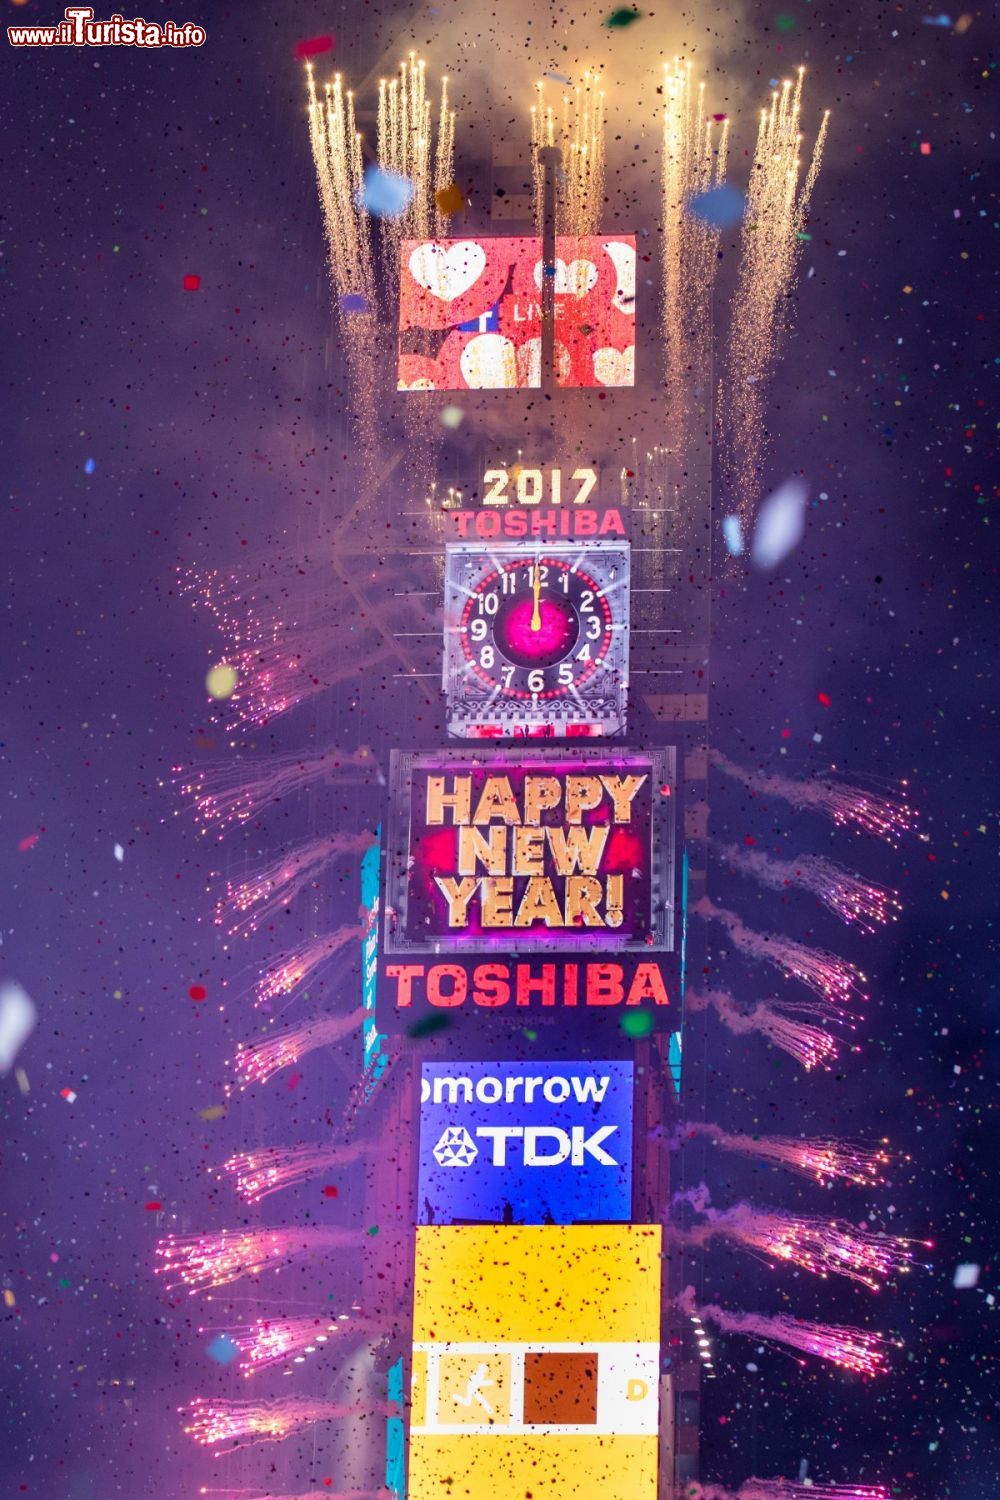 Immagine New York City: lo scoccare della mezzanotte durante il Capodanno a Times Square, dove tutto il mondo osserva lo spettacolo del New Year’s Ball Drop - foto © KC AmyHart